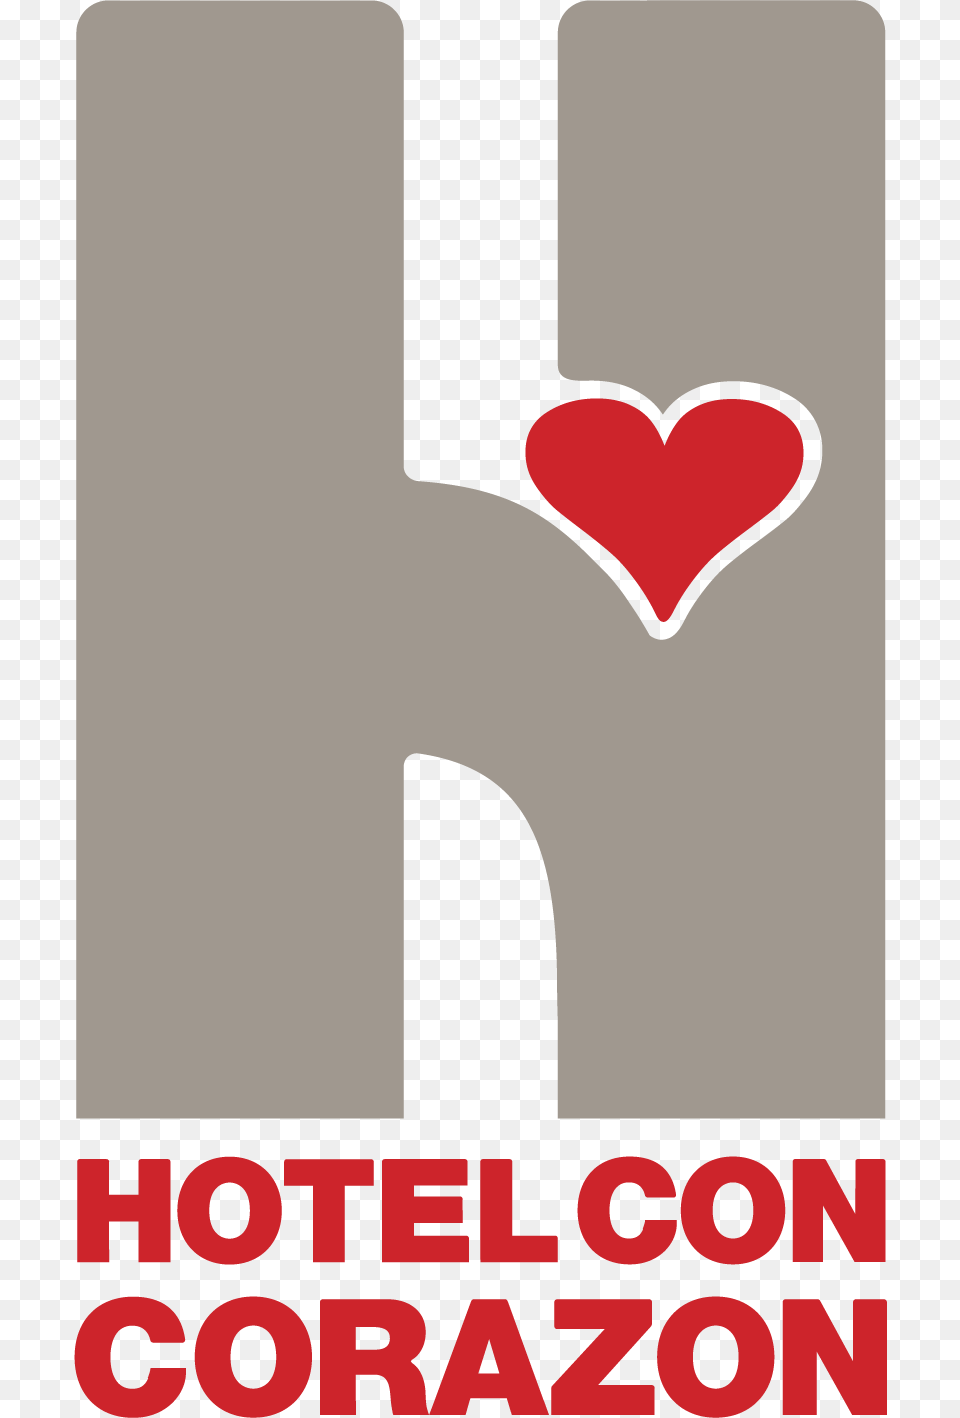 Hotel Con Corazon, Sticker, Heart, Logo Free Png